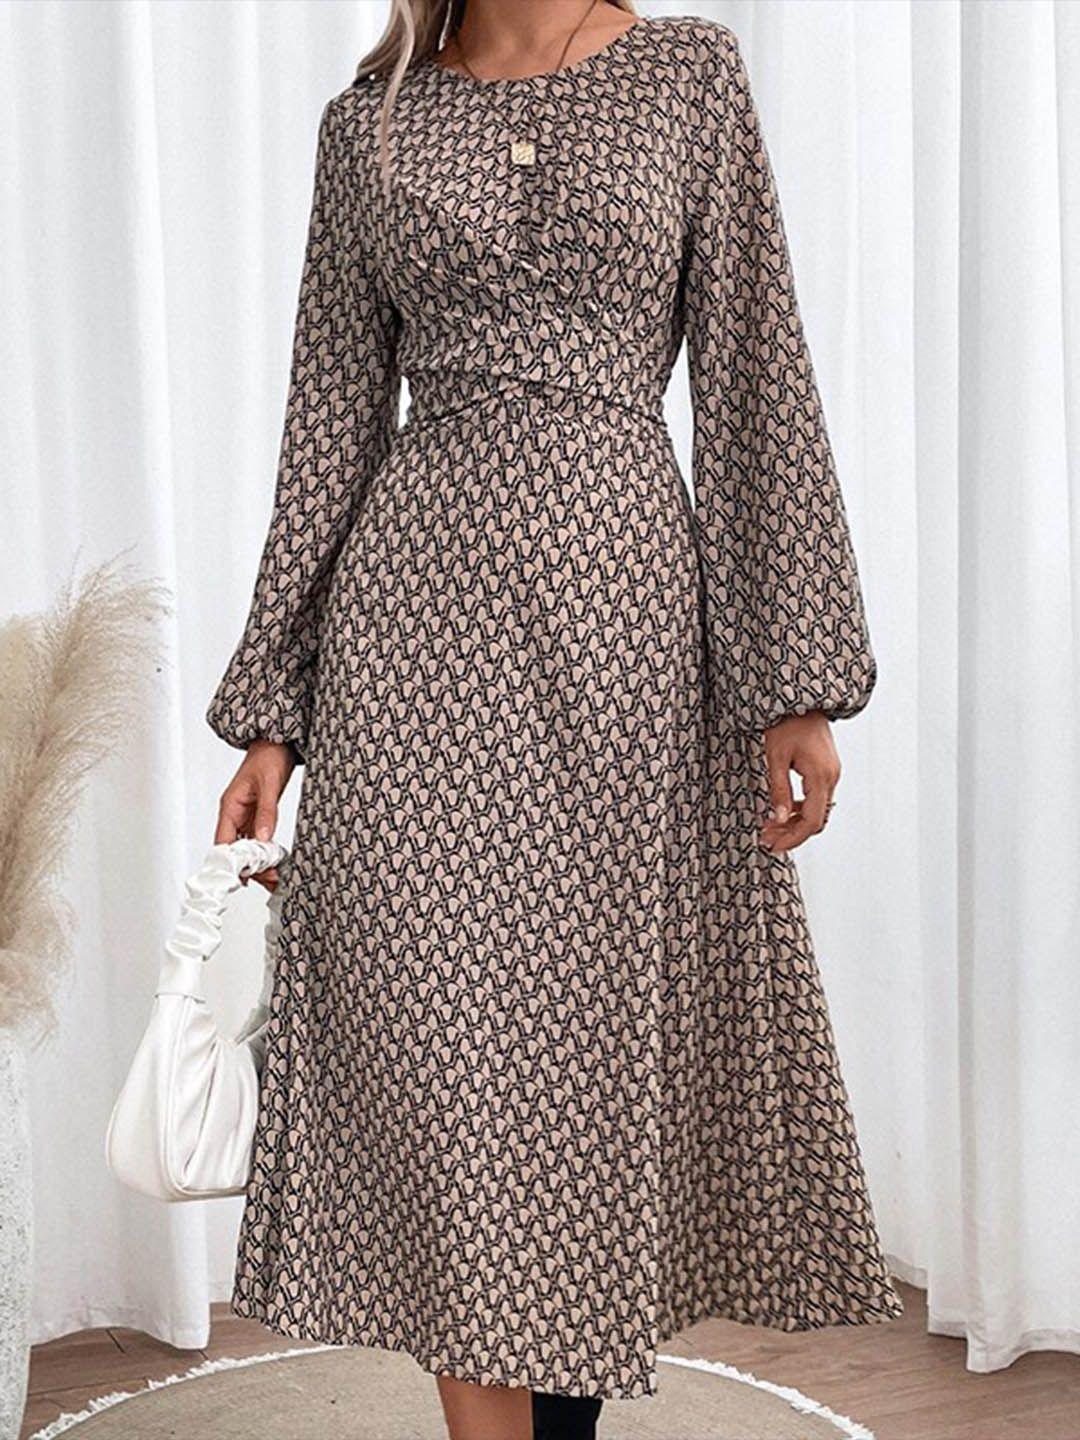 stylecast-khaki-&-walnut-print-fit-&-flare-midi-dress